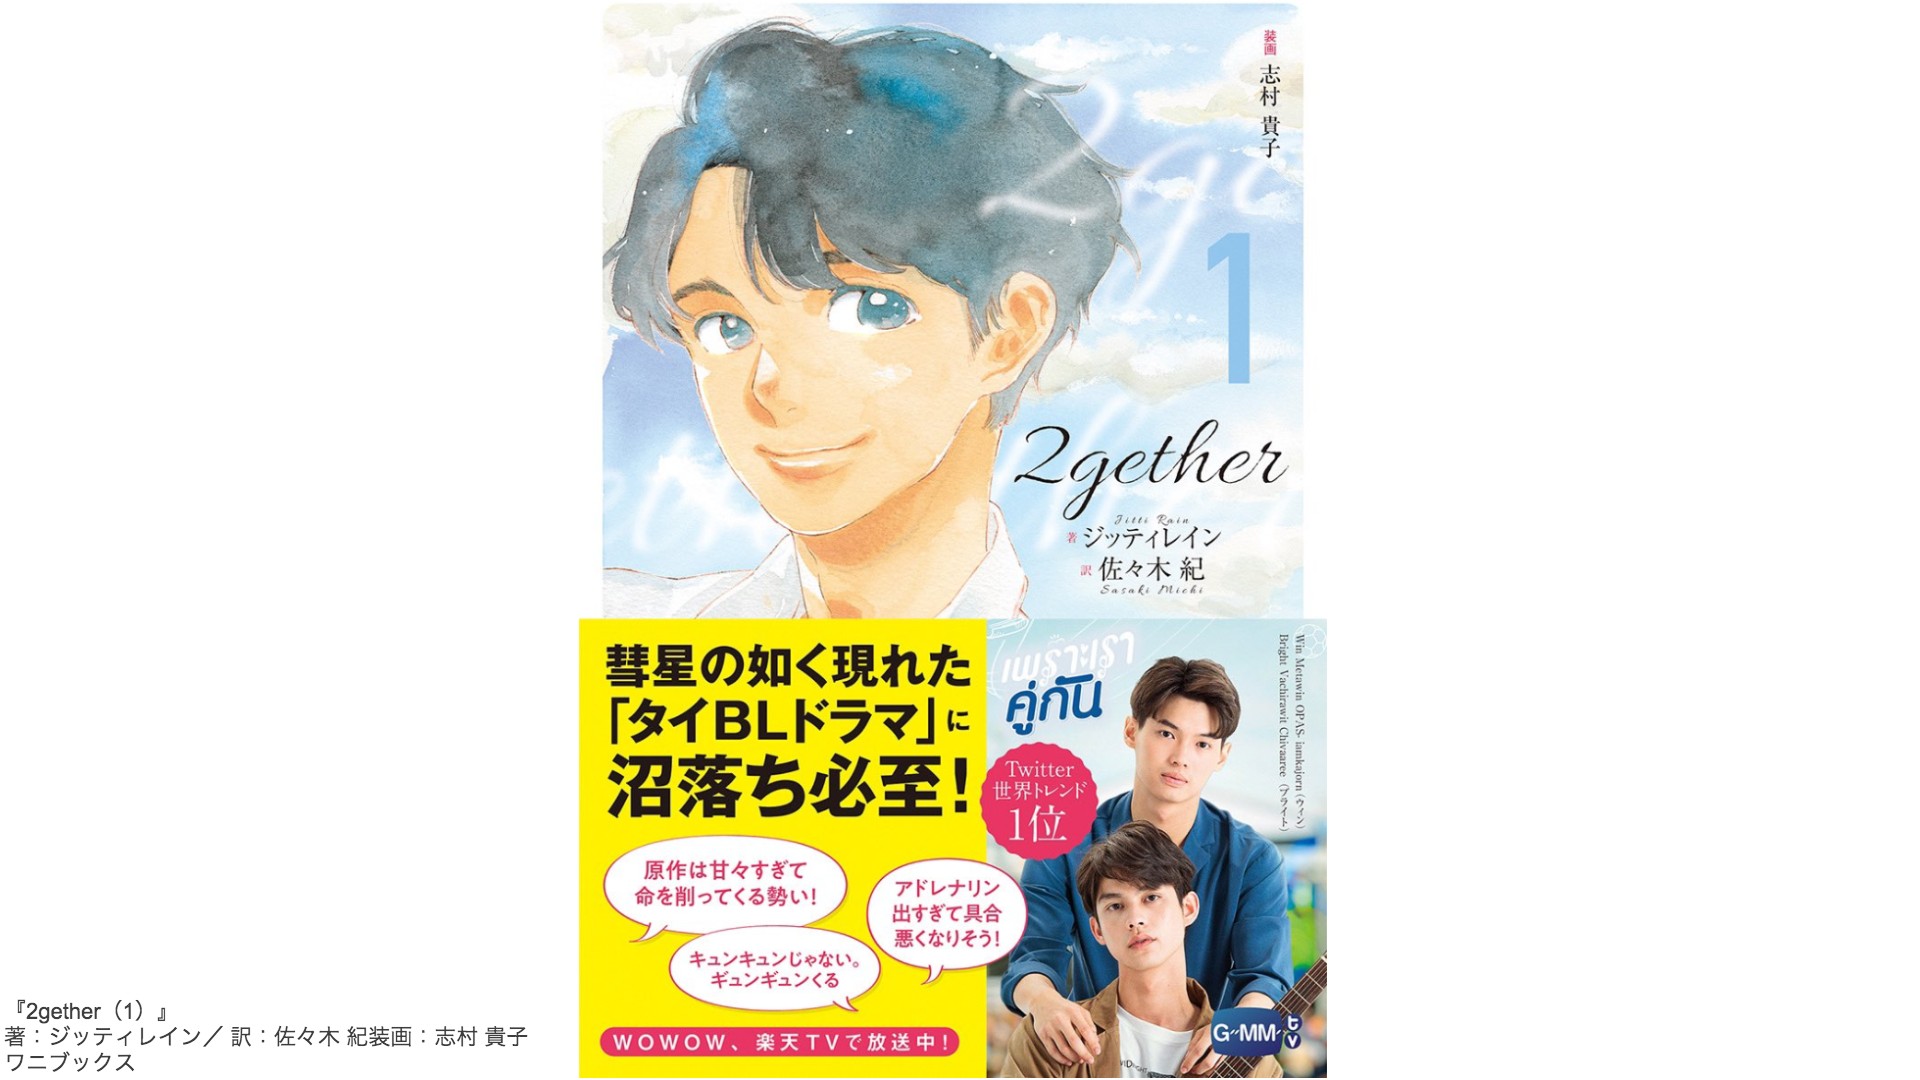 人気タイblドラマ 2gether 原作小説が発売されるよ 表紙は志村貴子描き下ろし ドラマにはないエピソードも 年9月18日 エキサイトニュース 2 2